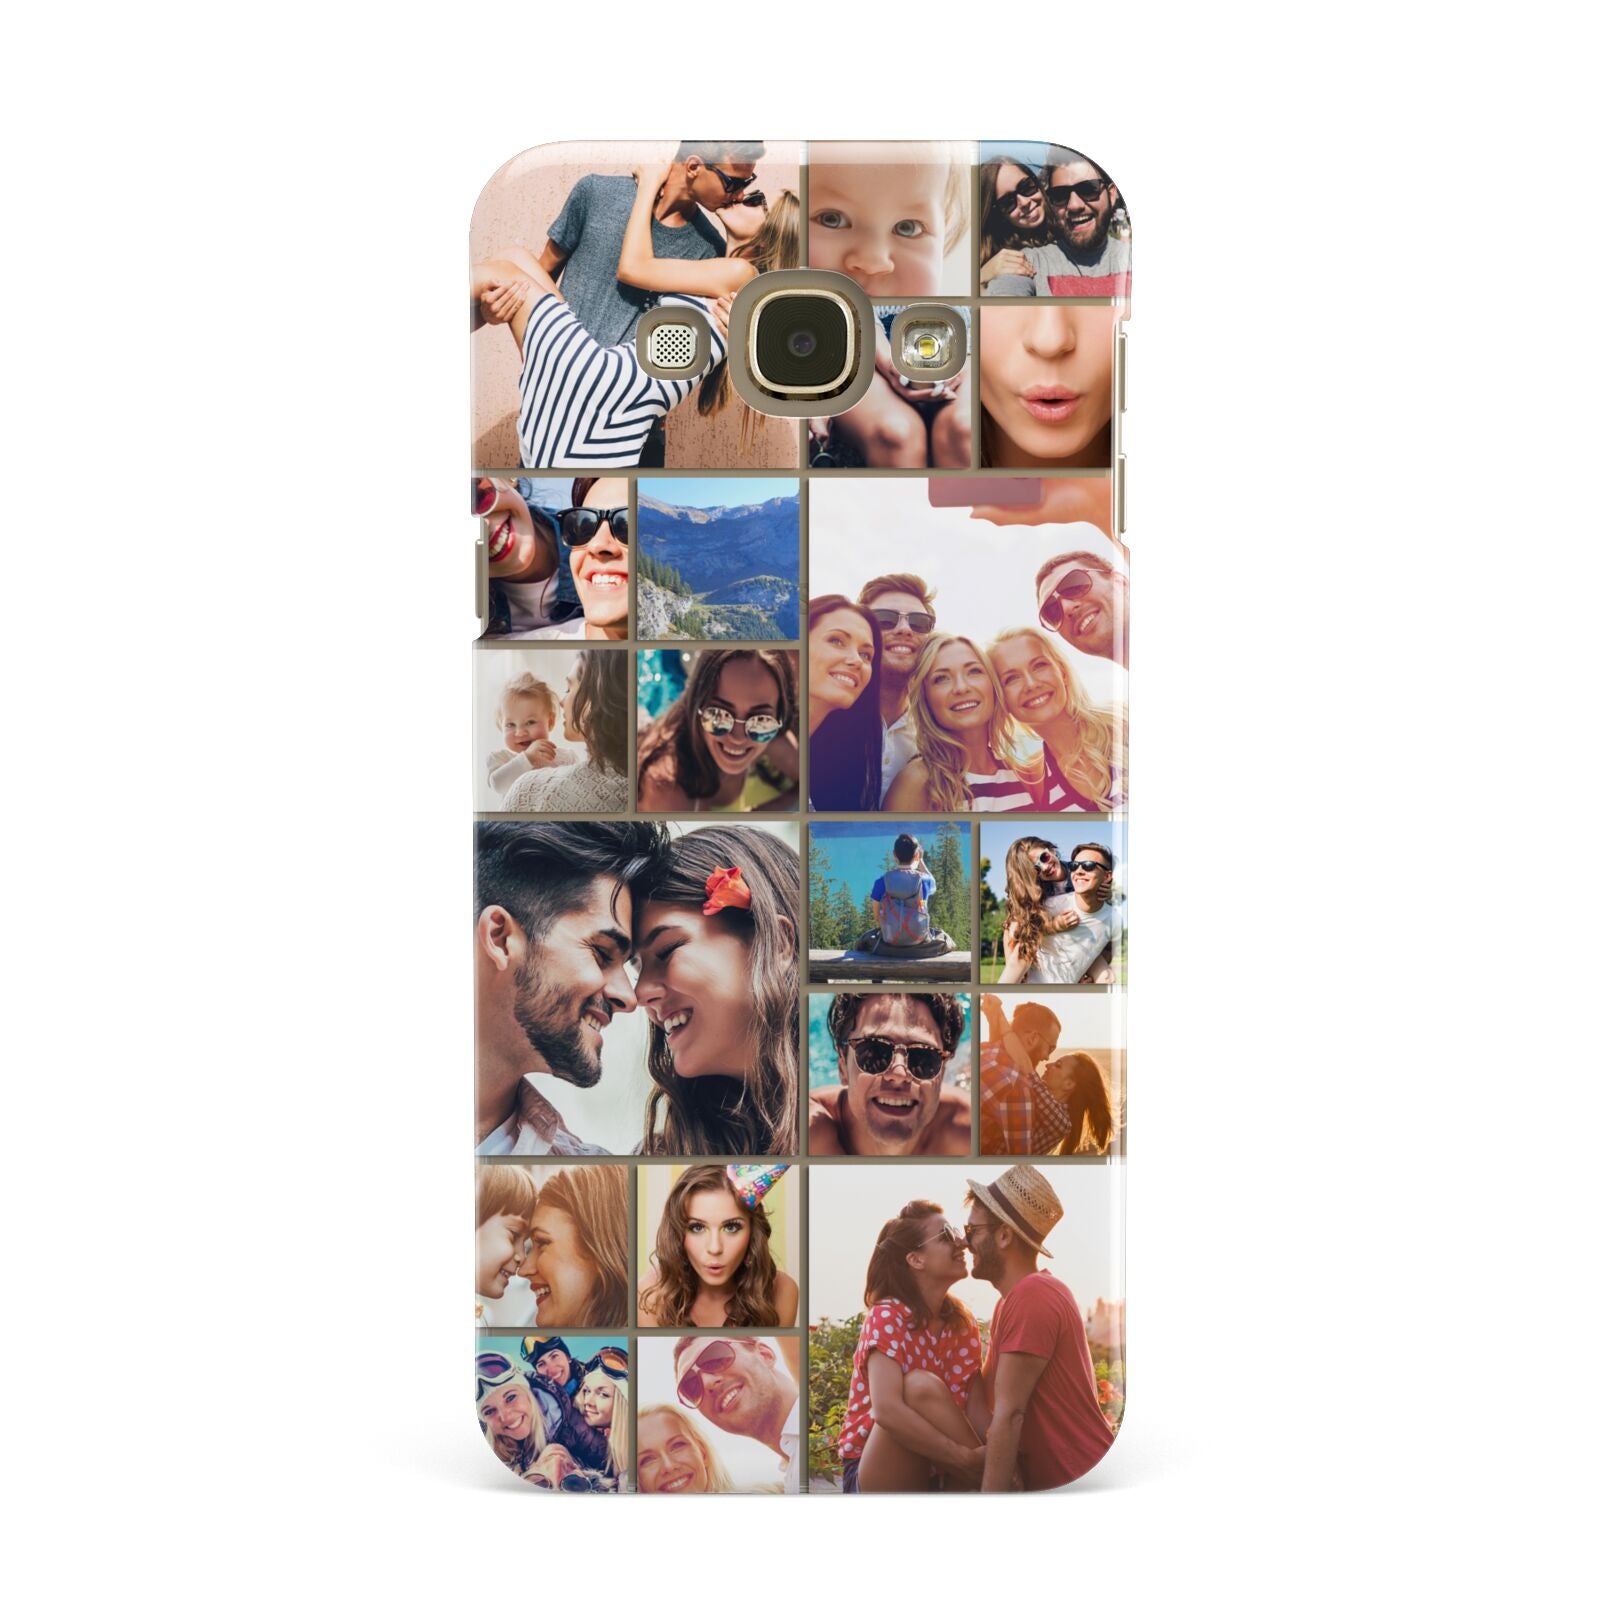 Photo Grid Samsung Galaxy A8 Case